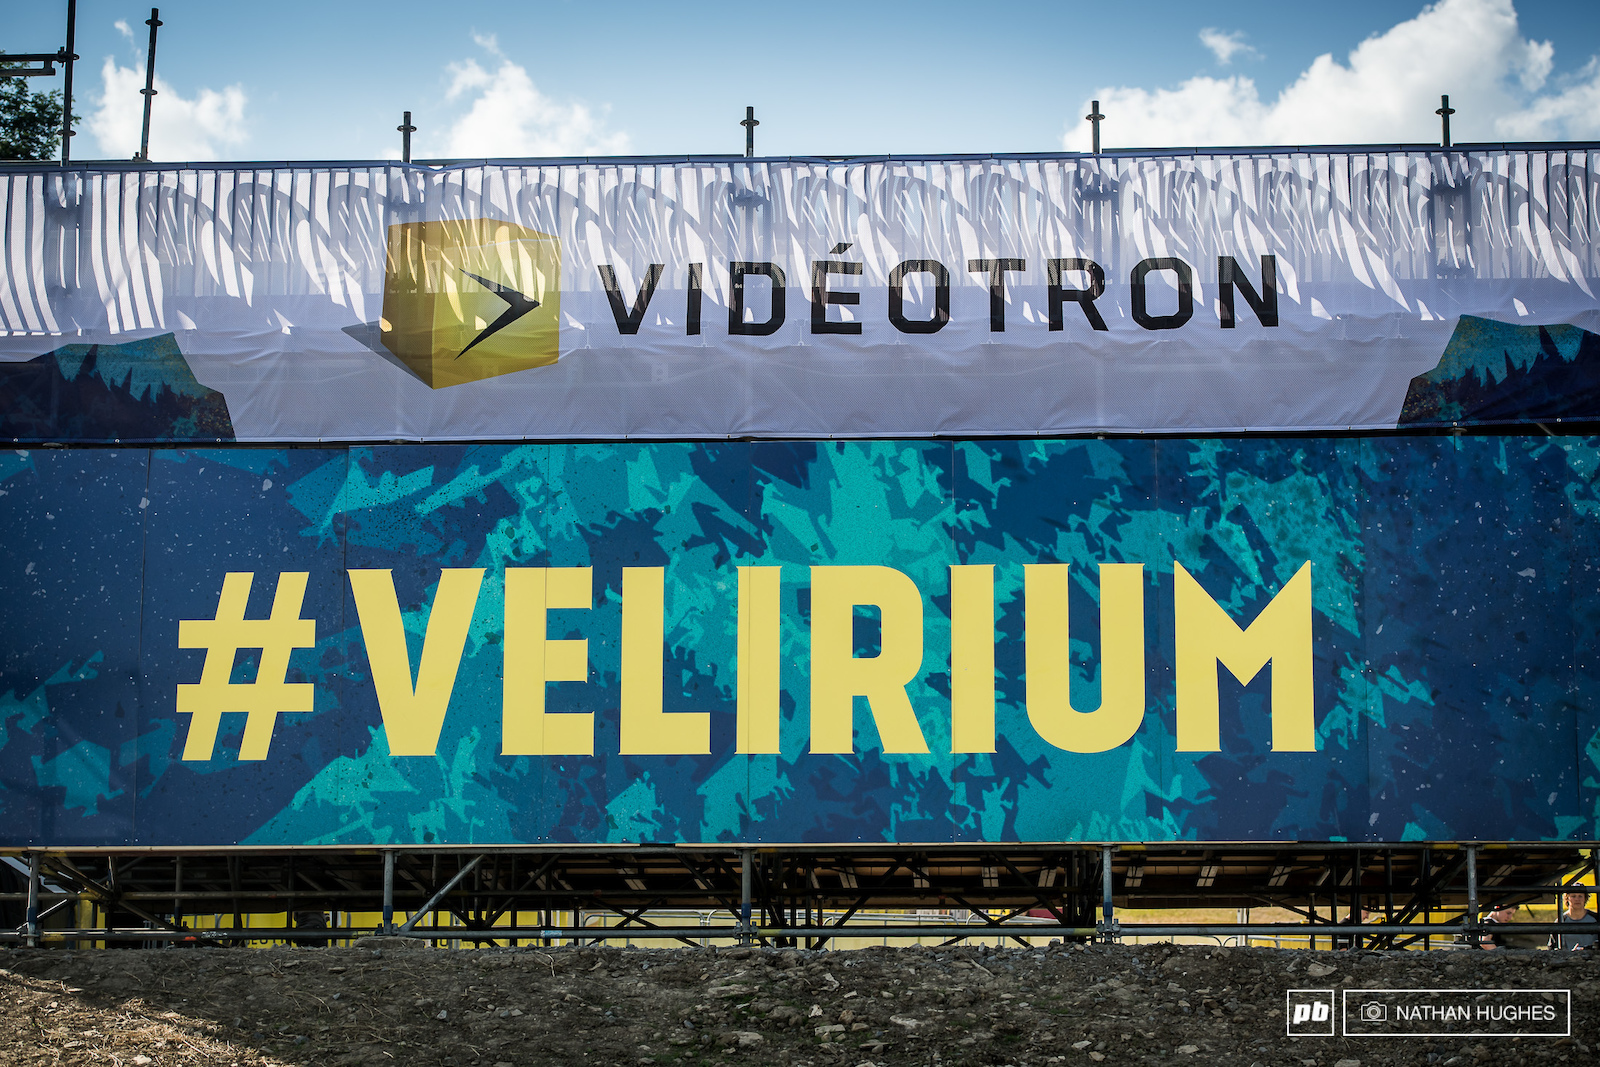 Velirium delirium sets in.